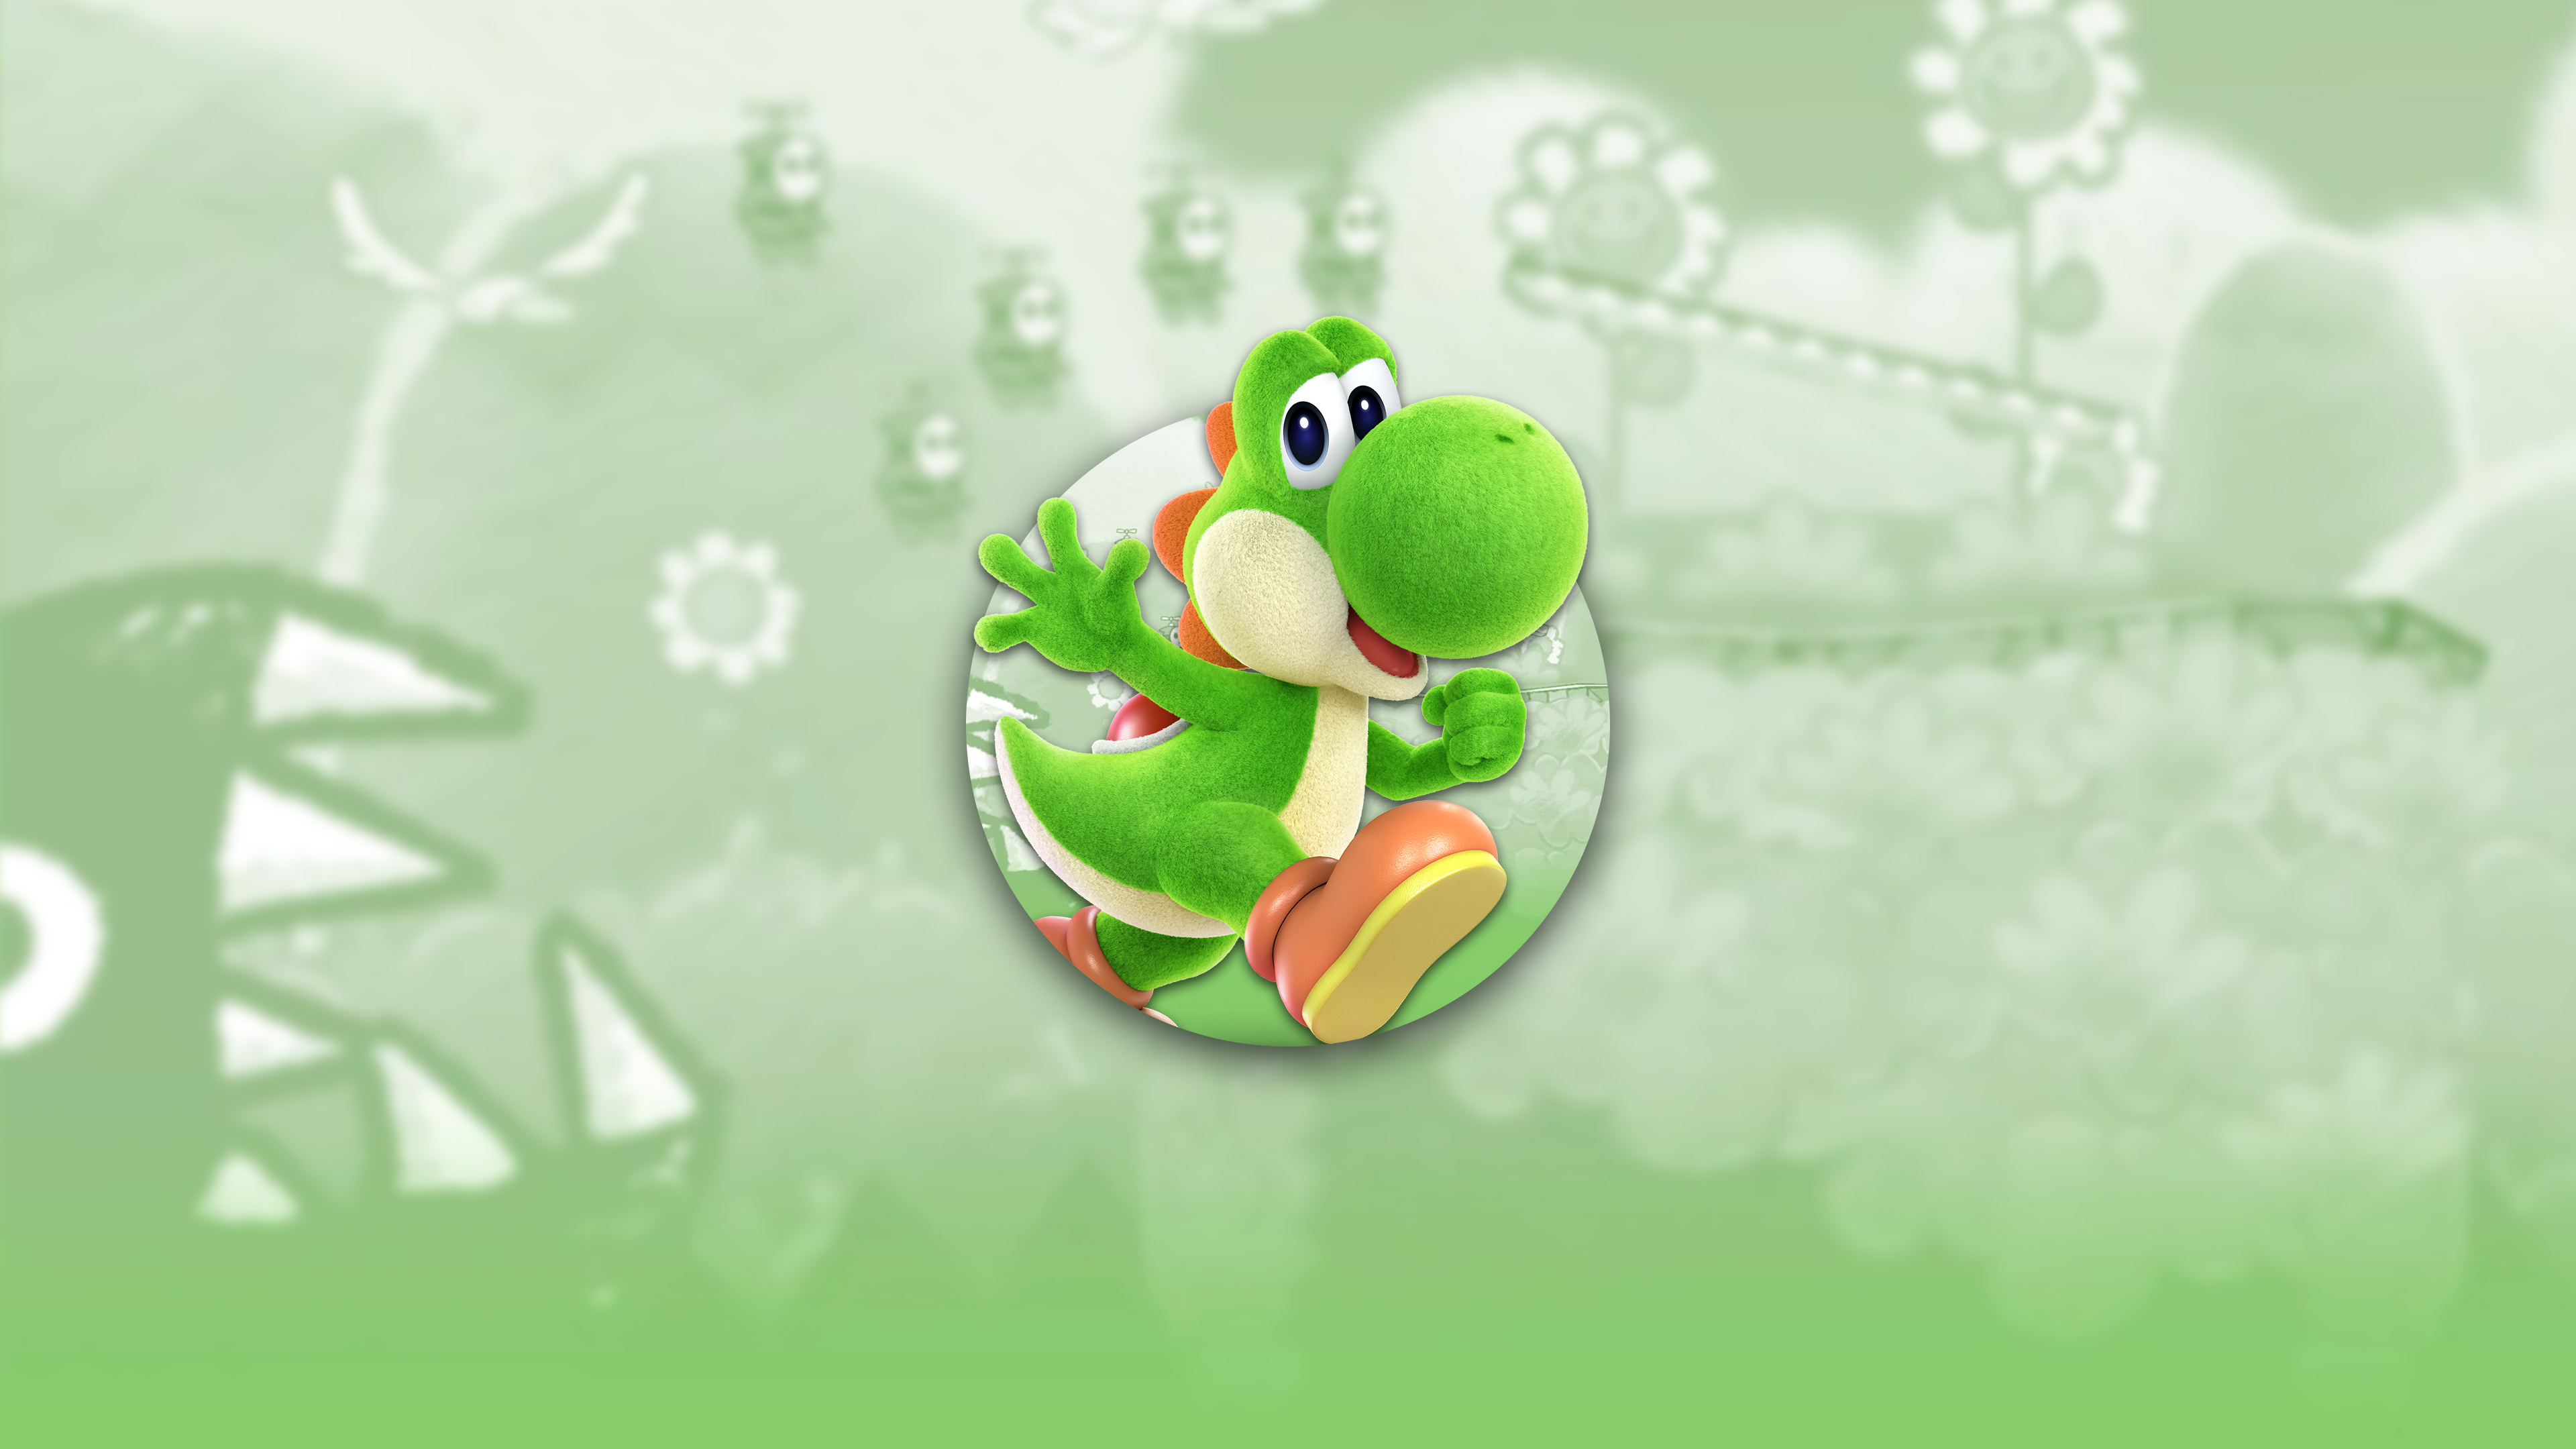 Super Smash Bros Ultimate Yoshi Uhd 4k Wallpaper - Reptile - HD Wallpaper 